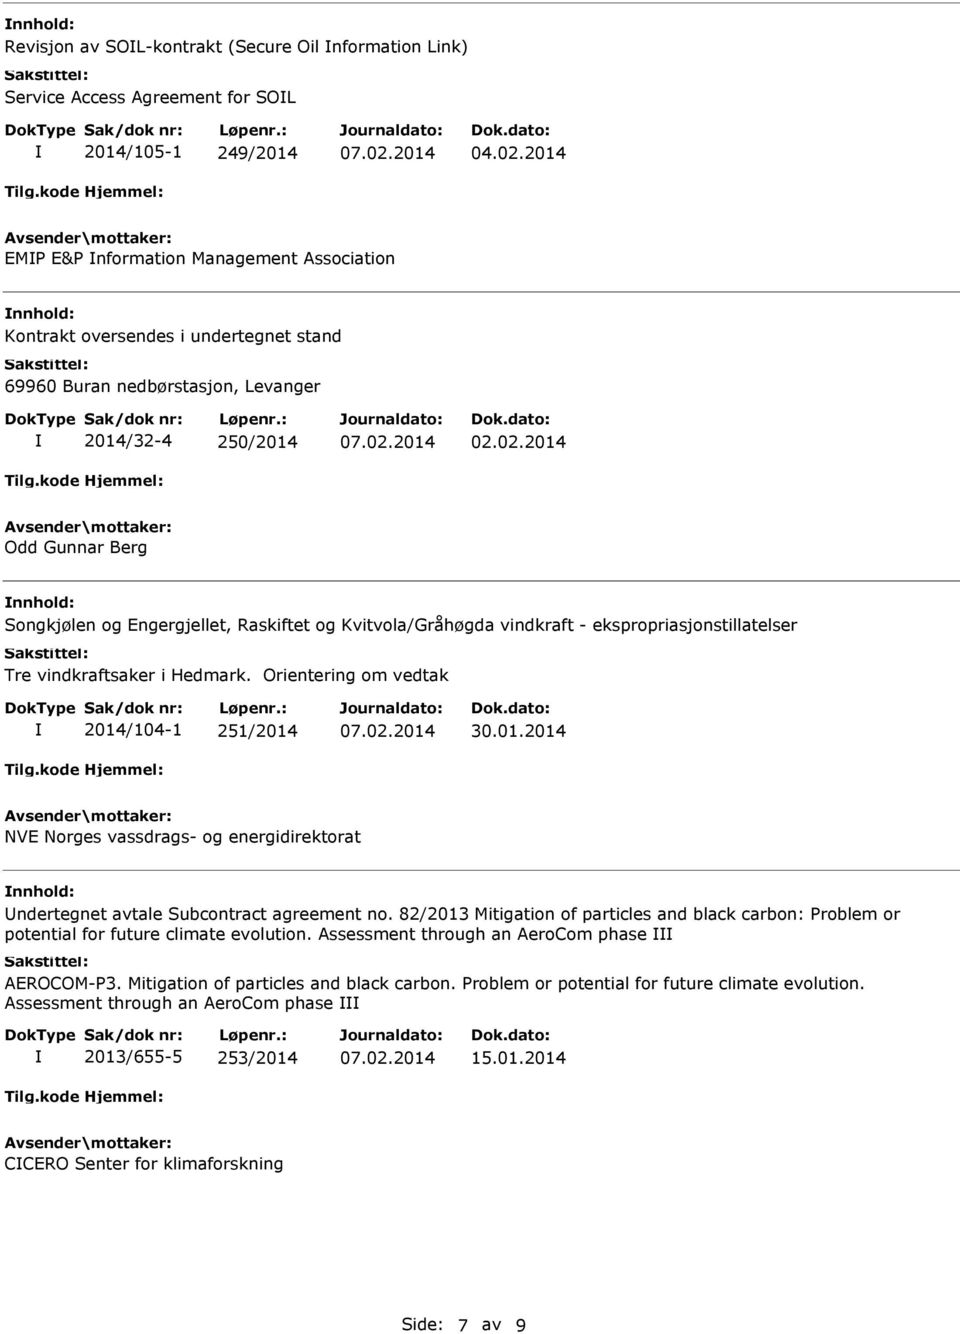 Orientering om vedtak 2014/104-1 251/2014 30.01.2014 NVE Norges vassdrags- og energidirektorat ndertegnet avtale Subcontract agreement no.